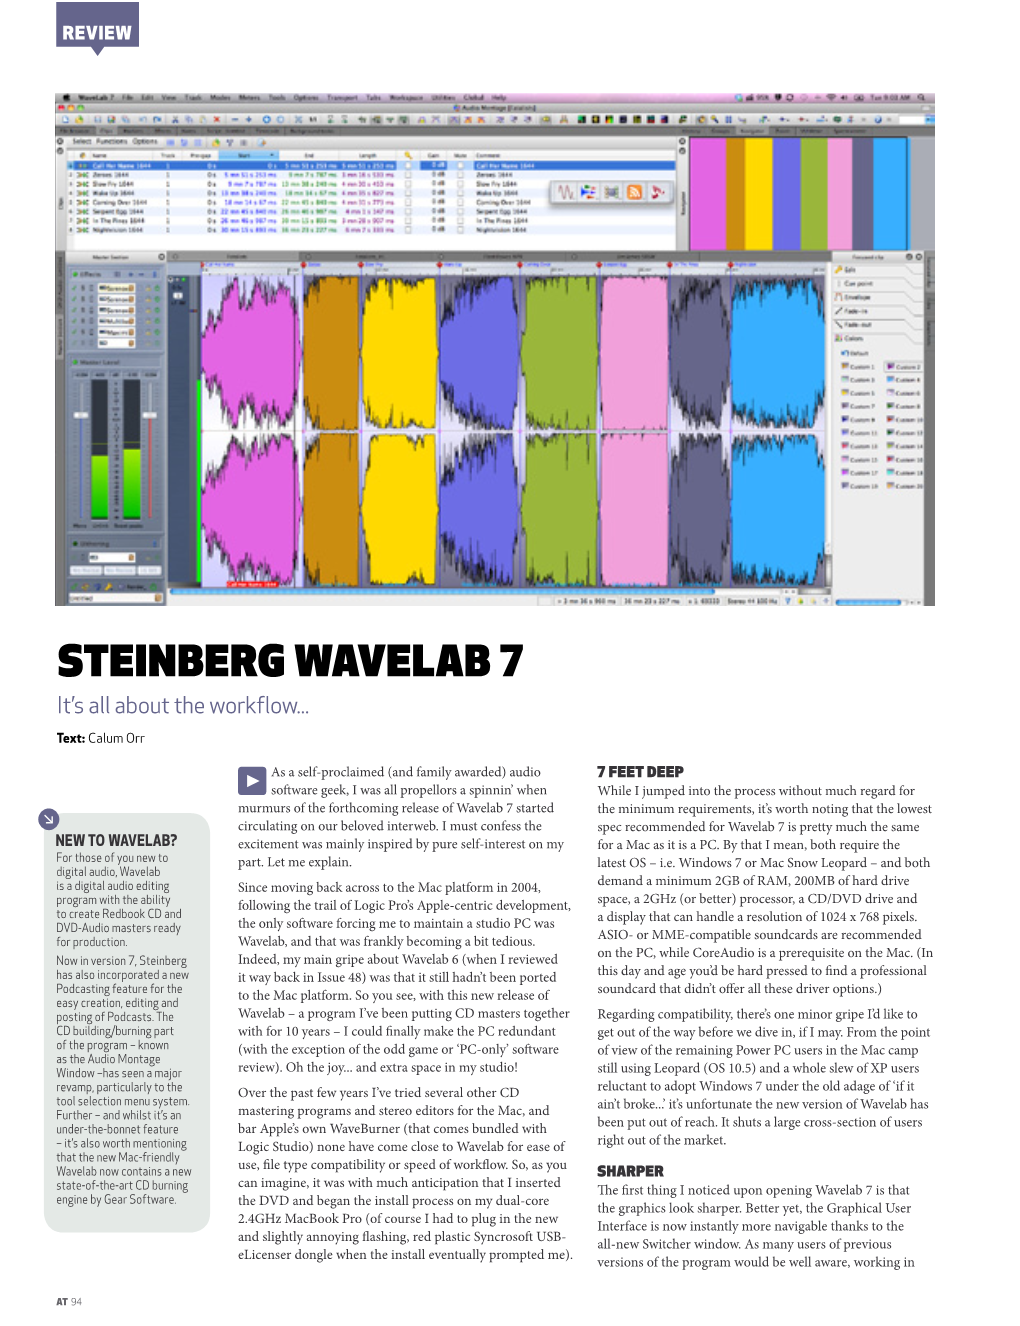 Steinberg Wavelab 7 Issue 79